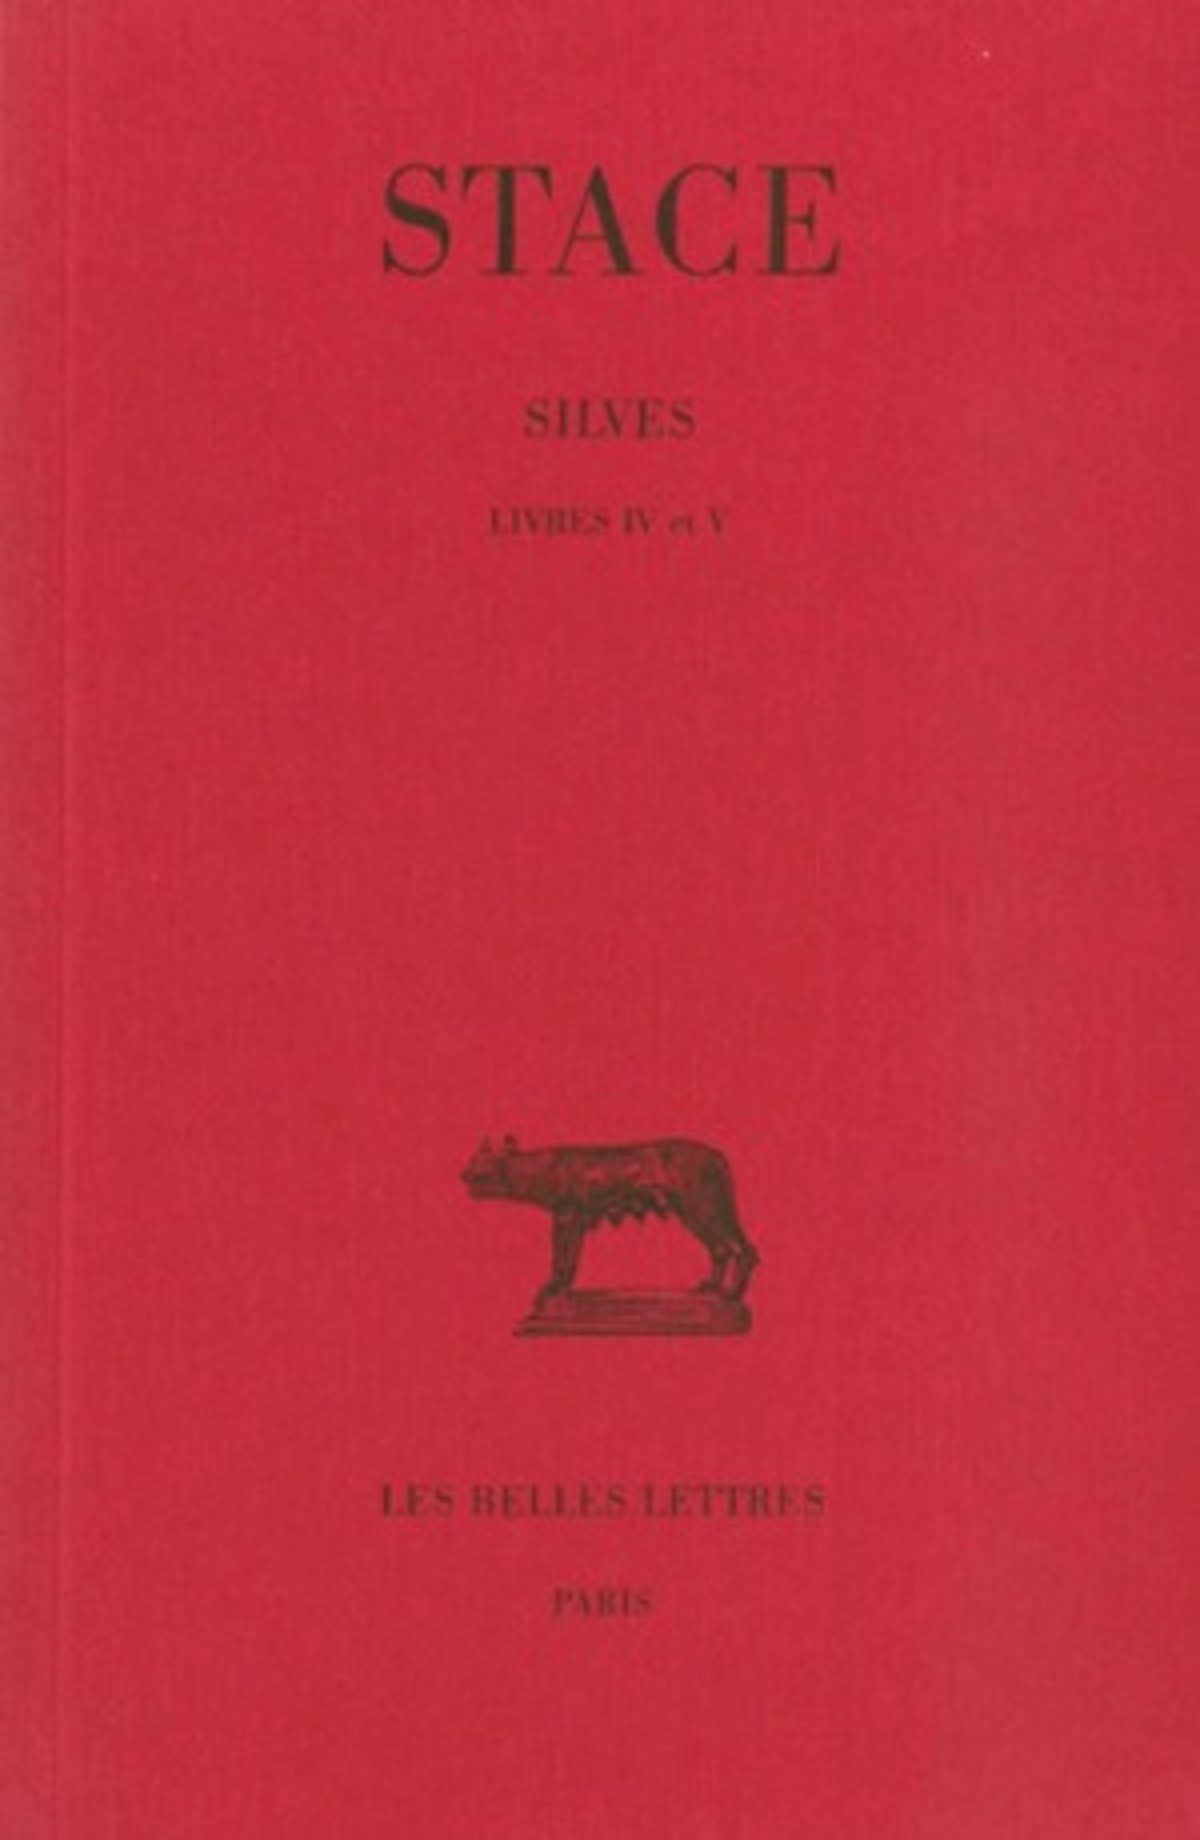 Silves. Tome II : Livres IV-V